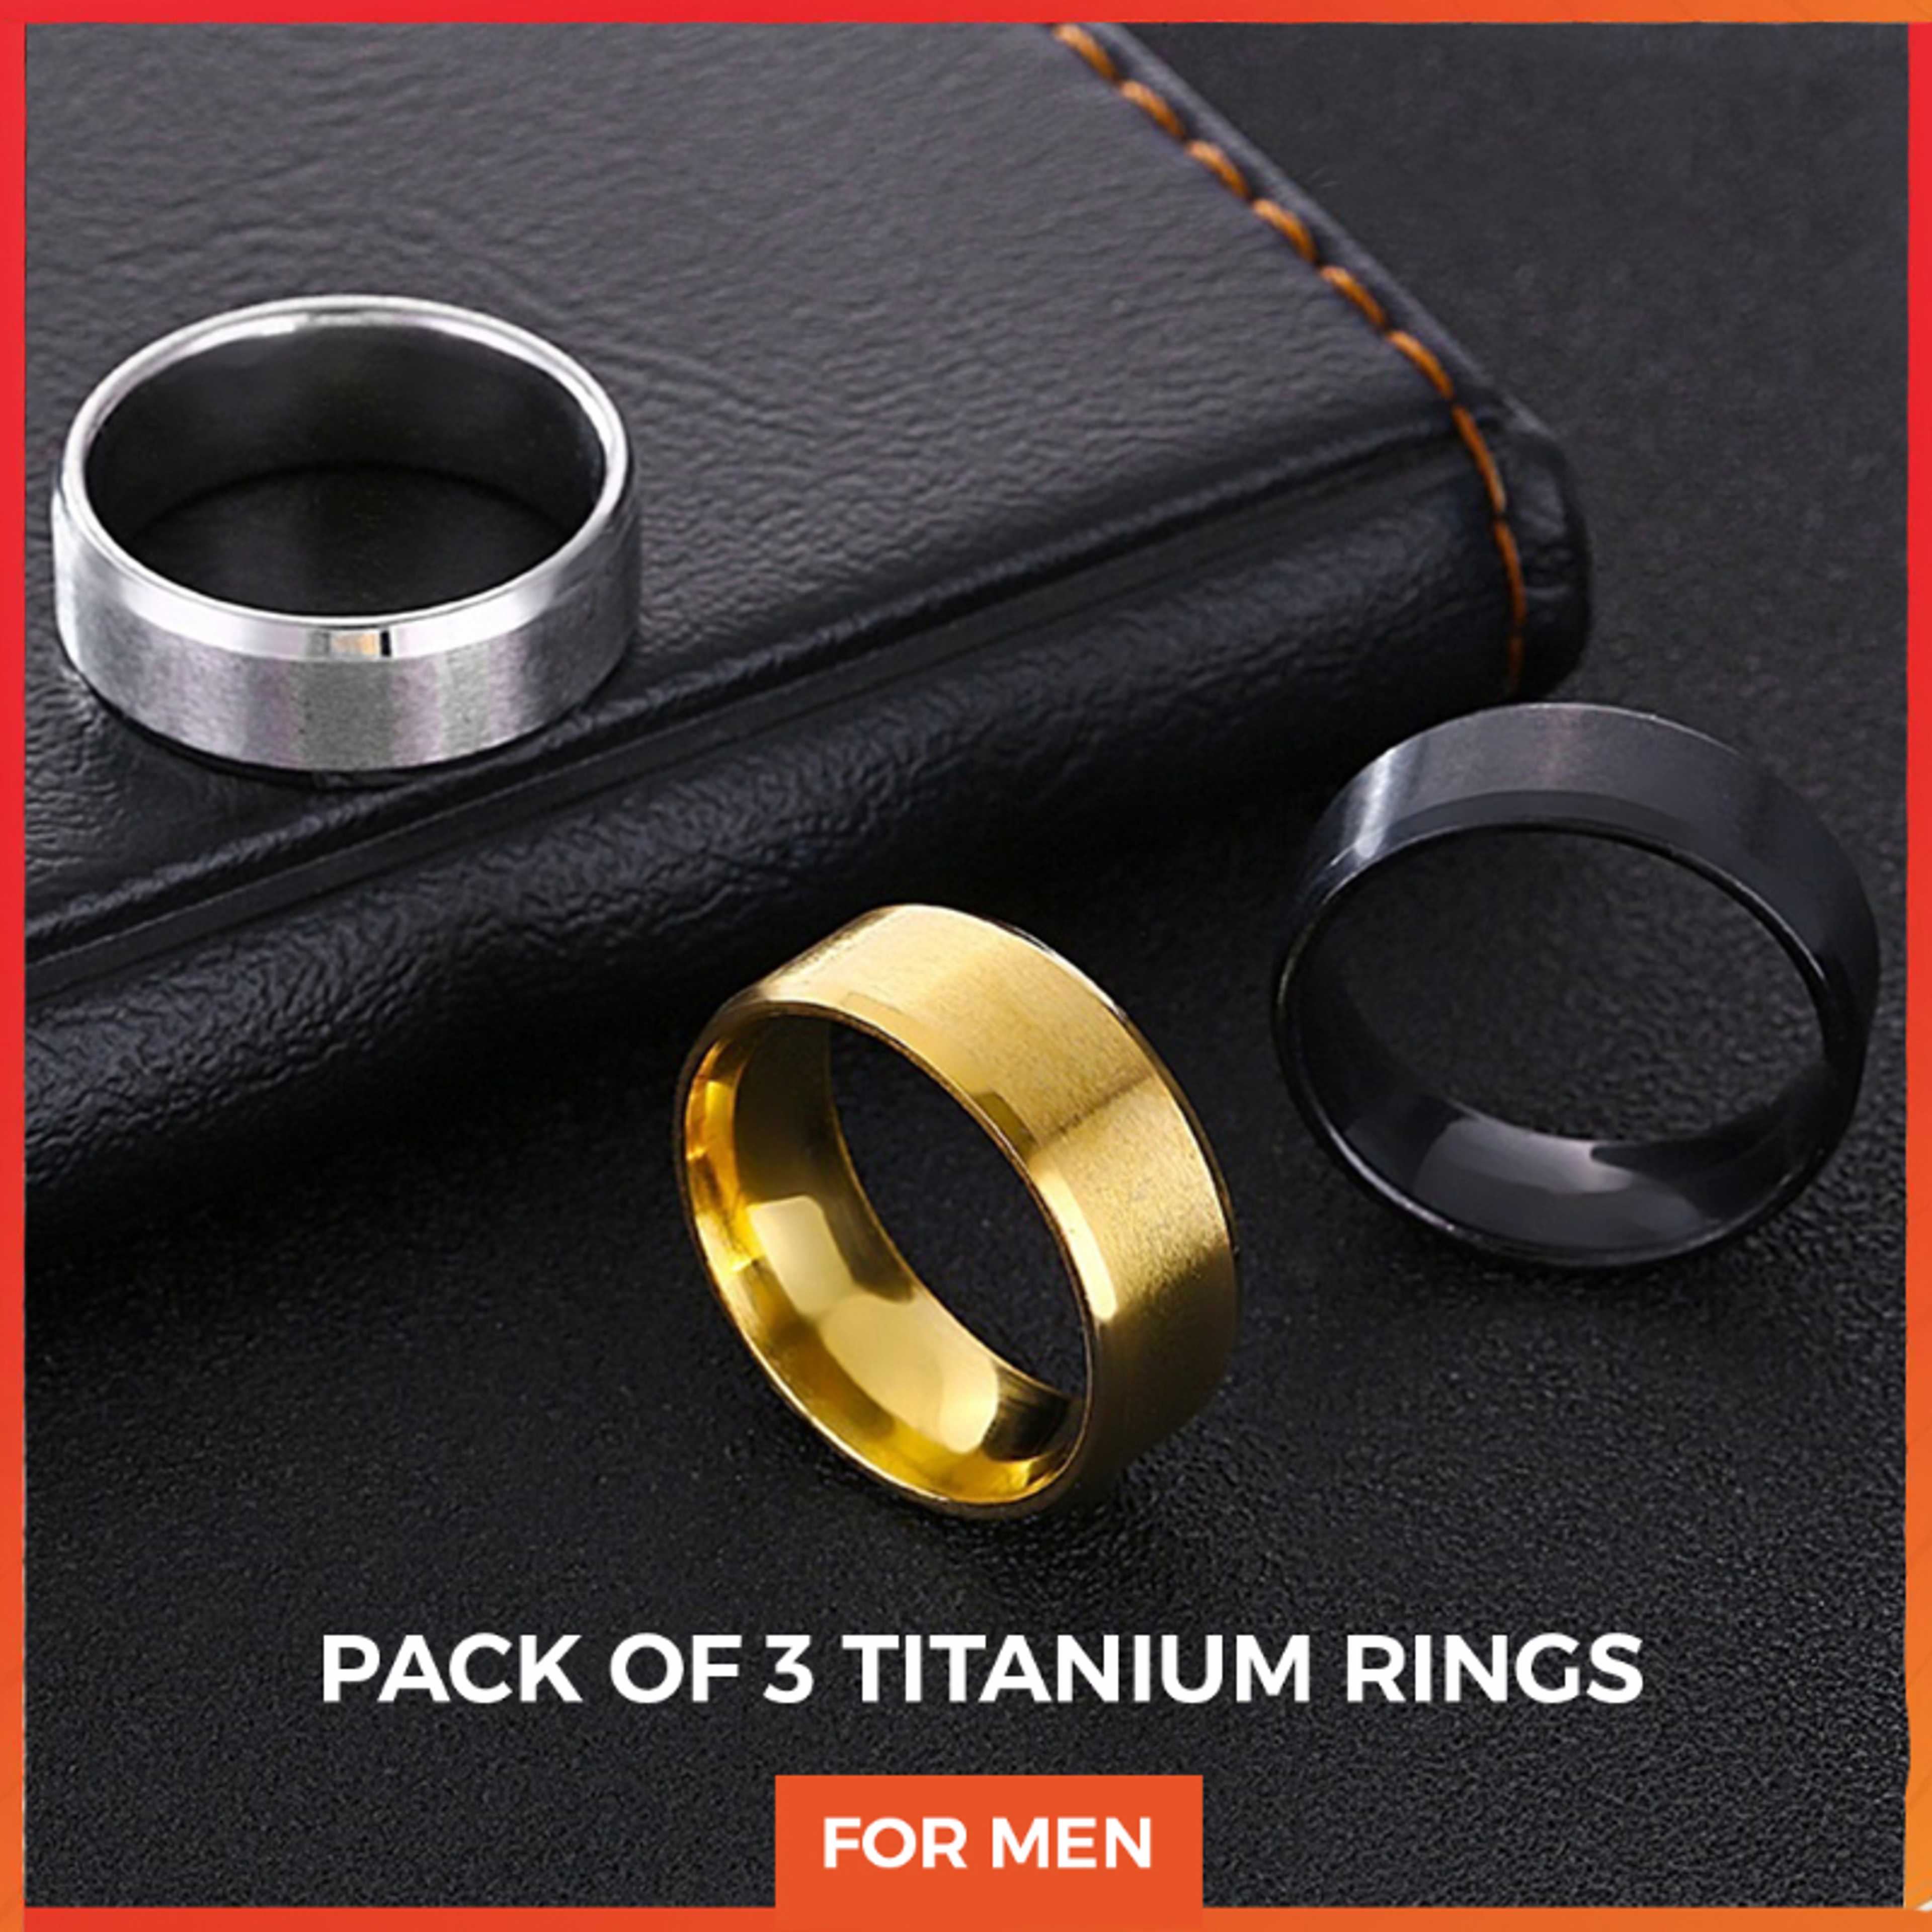 Pack of 3 silver/black/golden titanium Ring for men